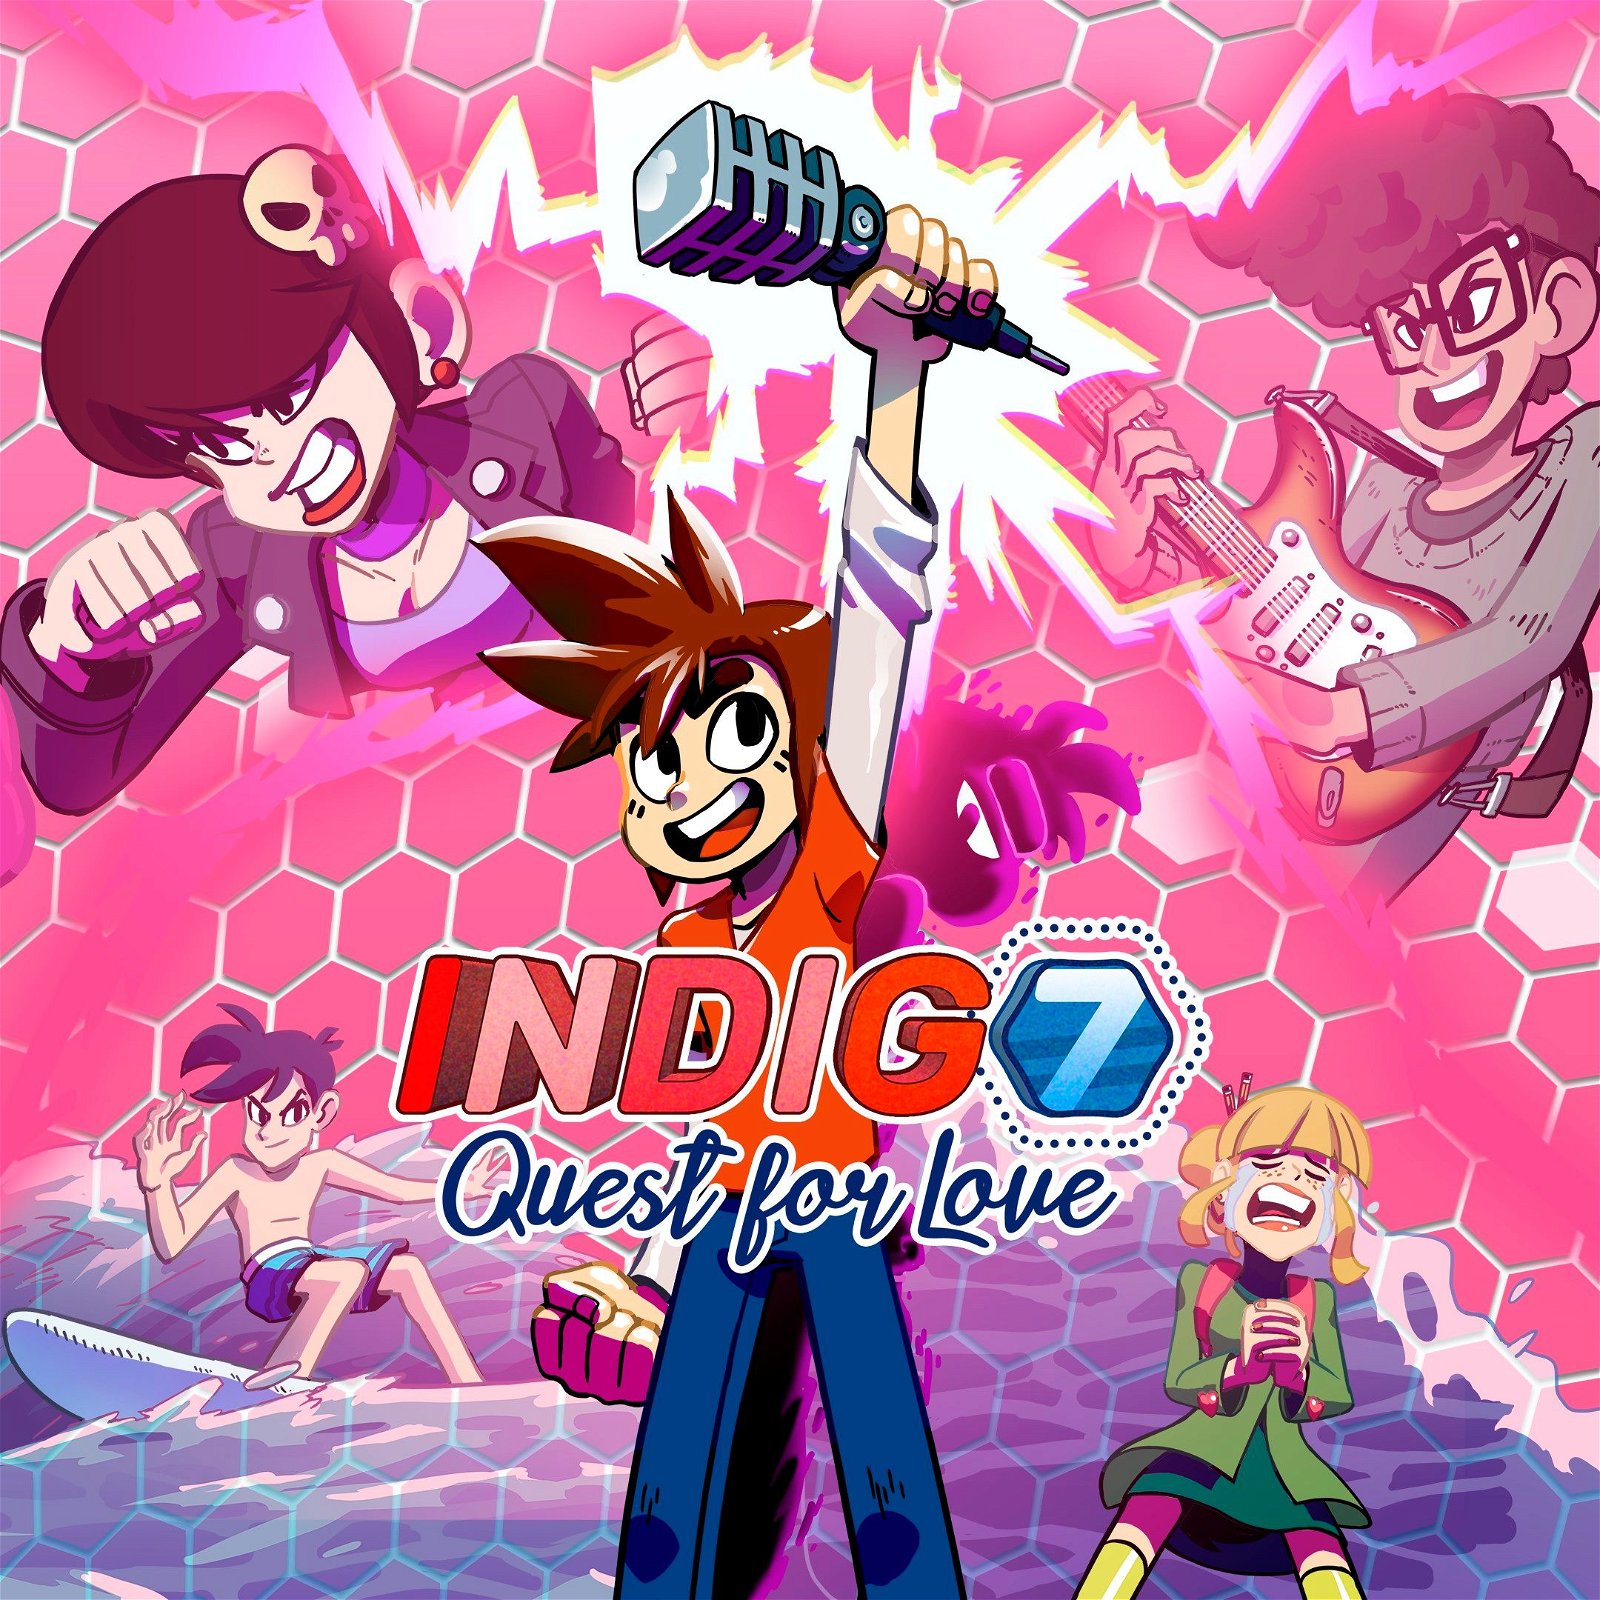 Image of Indigo 7 Quest of love